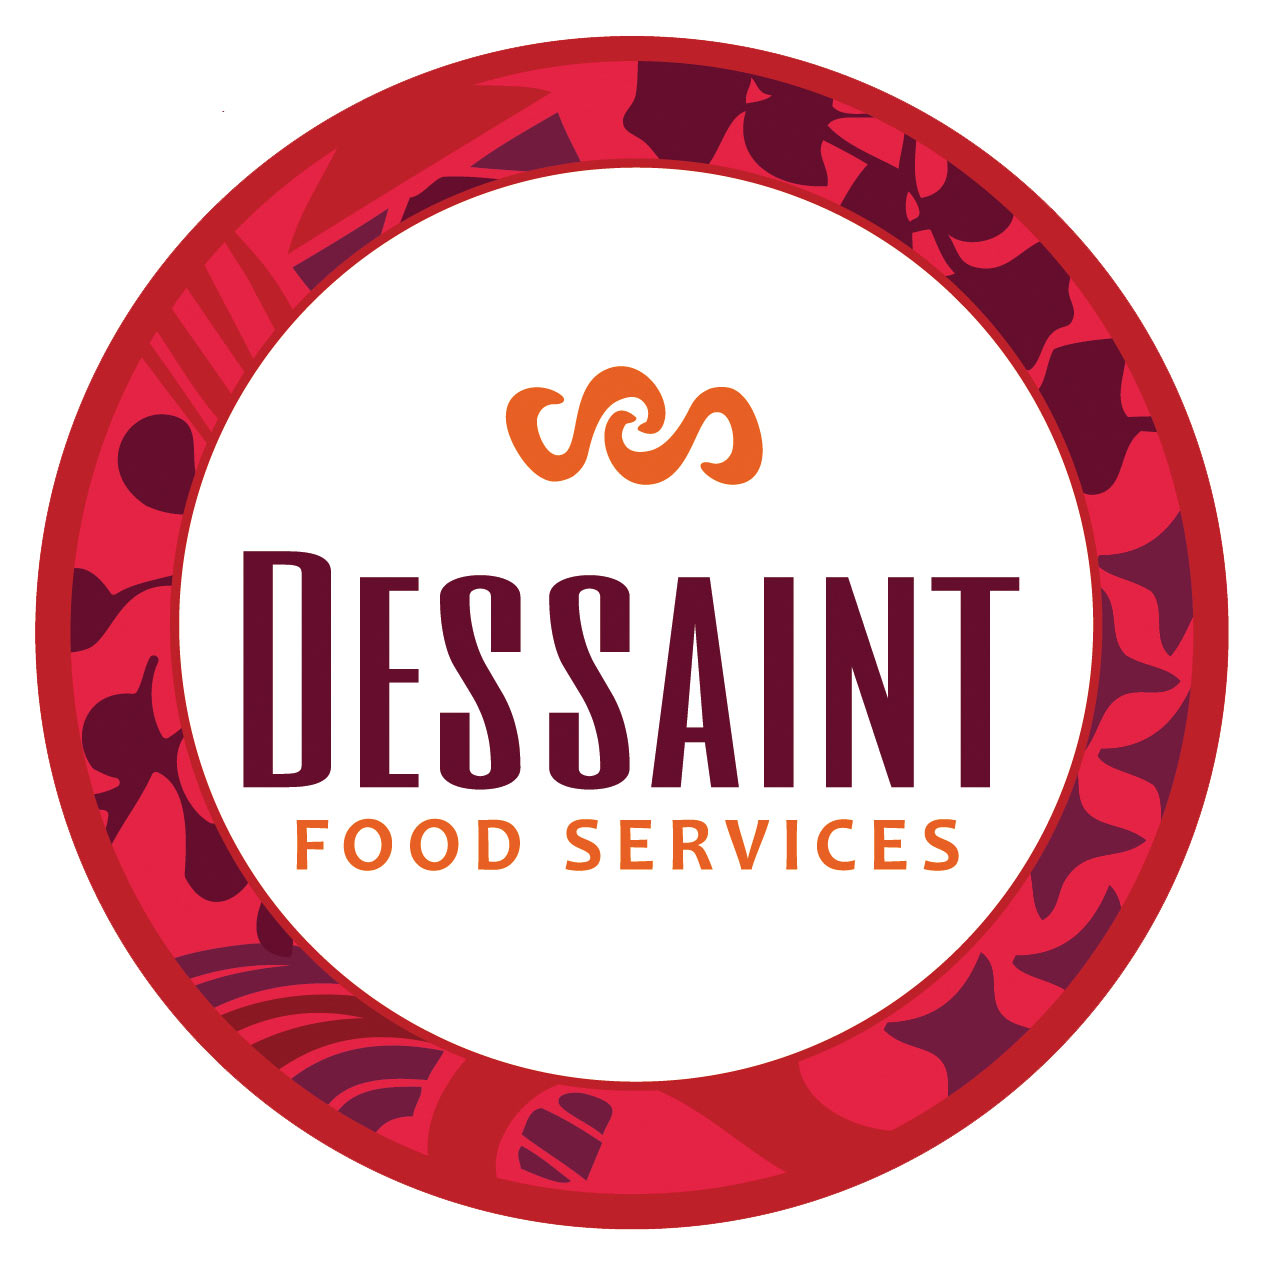 Dessaint Food Services